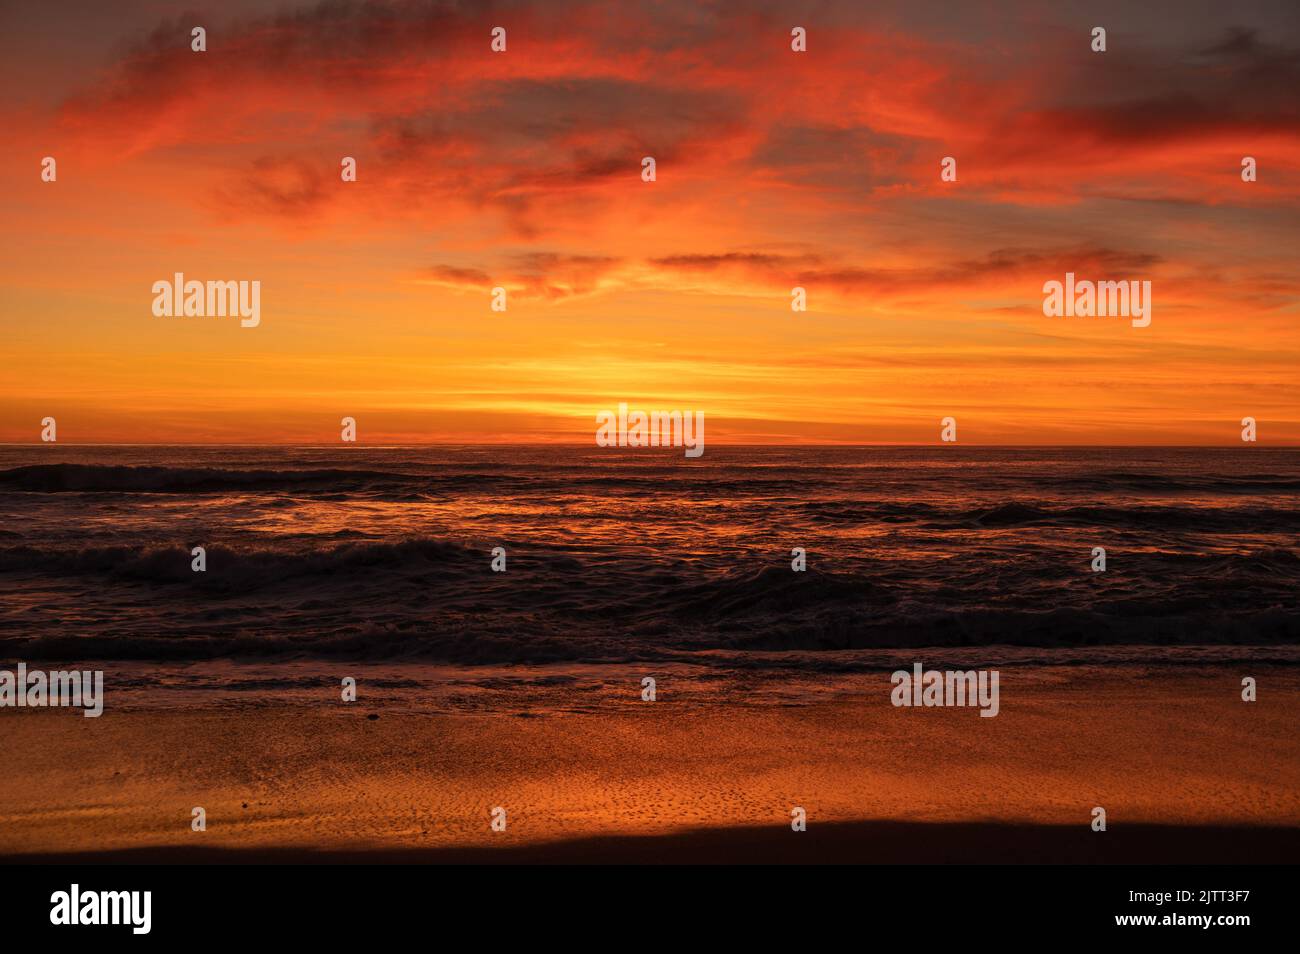 Splendida vista mozzafiato del tramonto sull'oceano. Acque profonde ondulate che si fondono con il cielo arancione nuvoloso alla linea Horizon. Tema Fotografia del paesaggio. Foto Stock